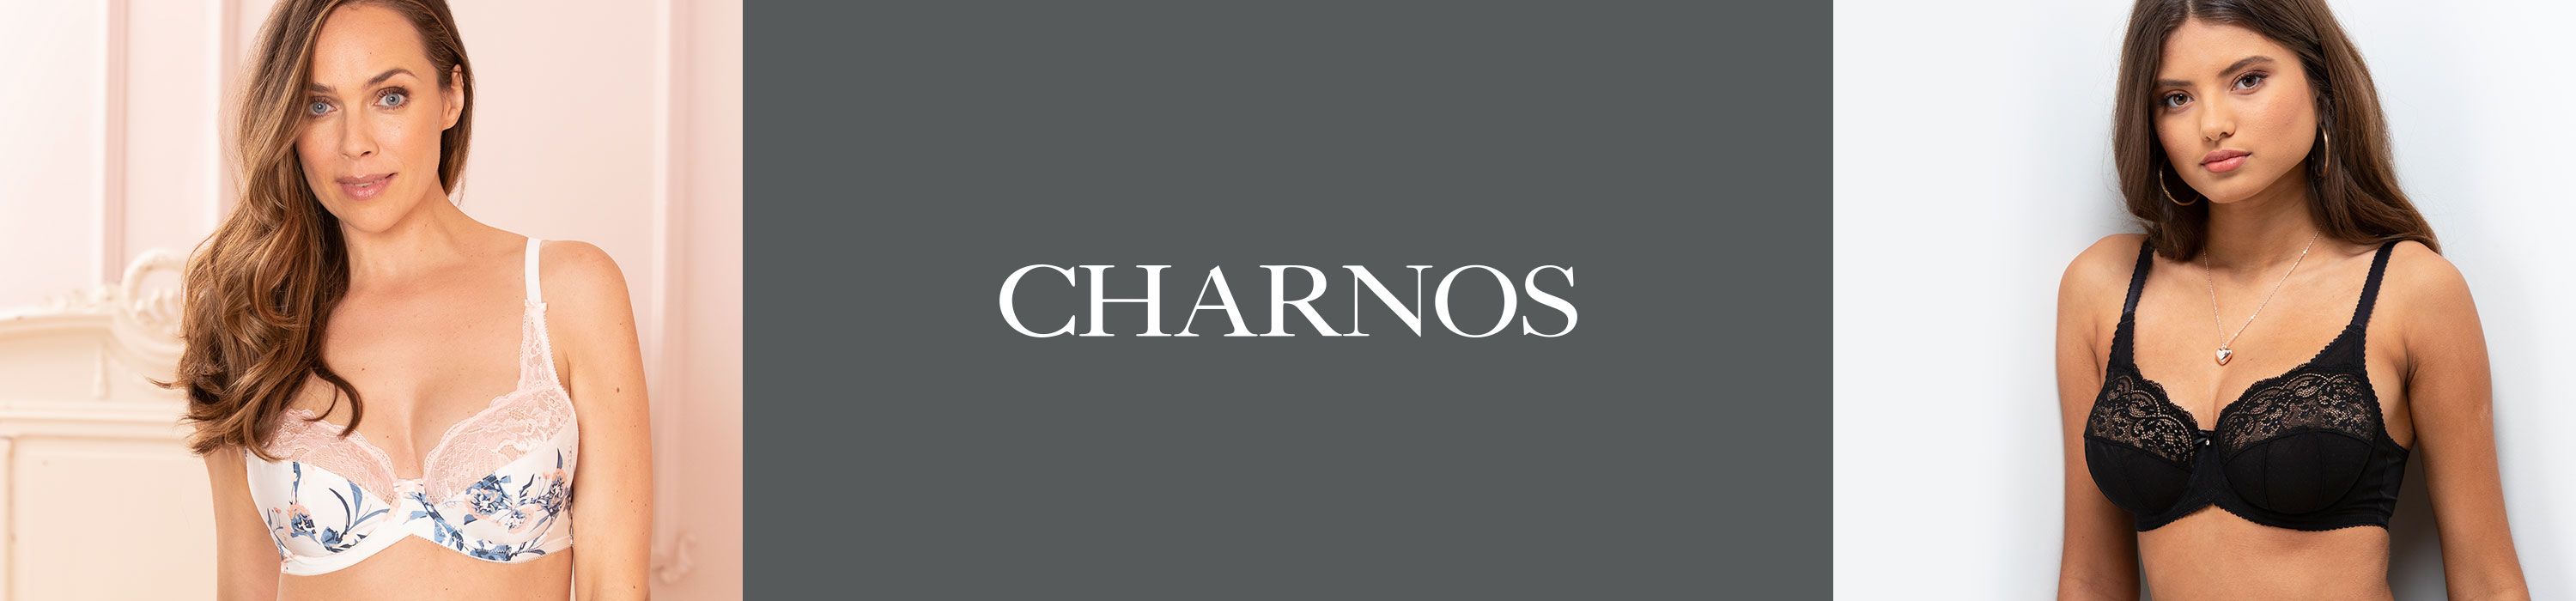 Charnos Superfit Thong - Underwraps Lingerie